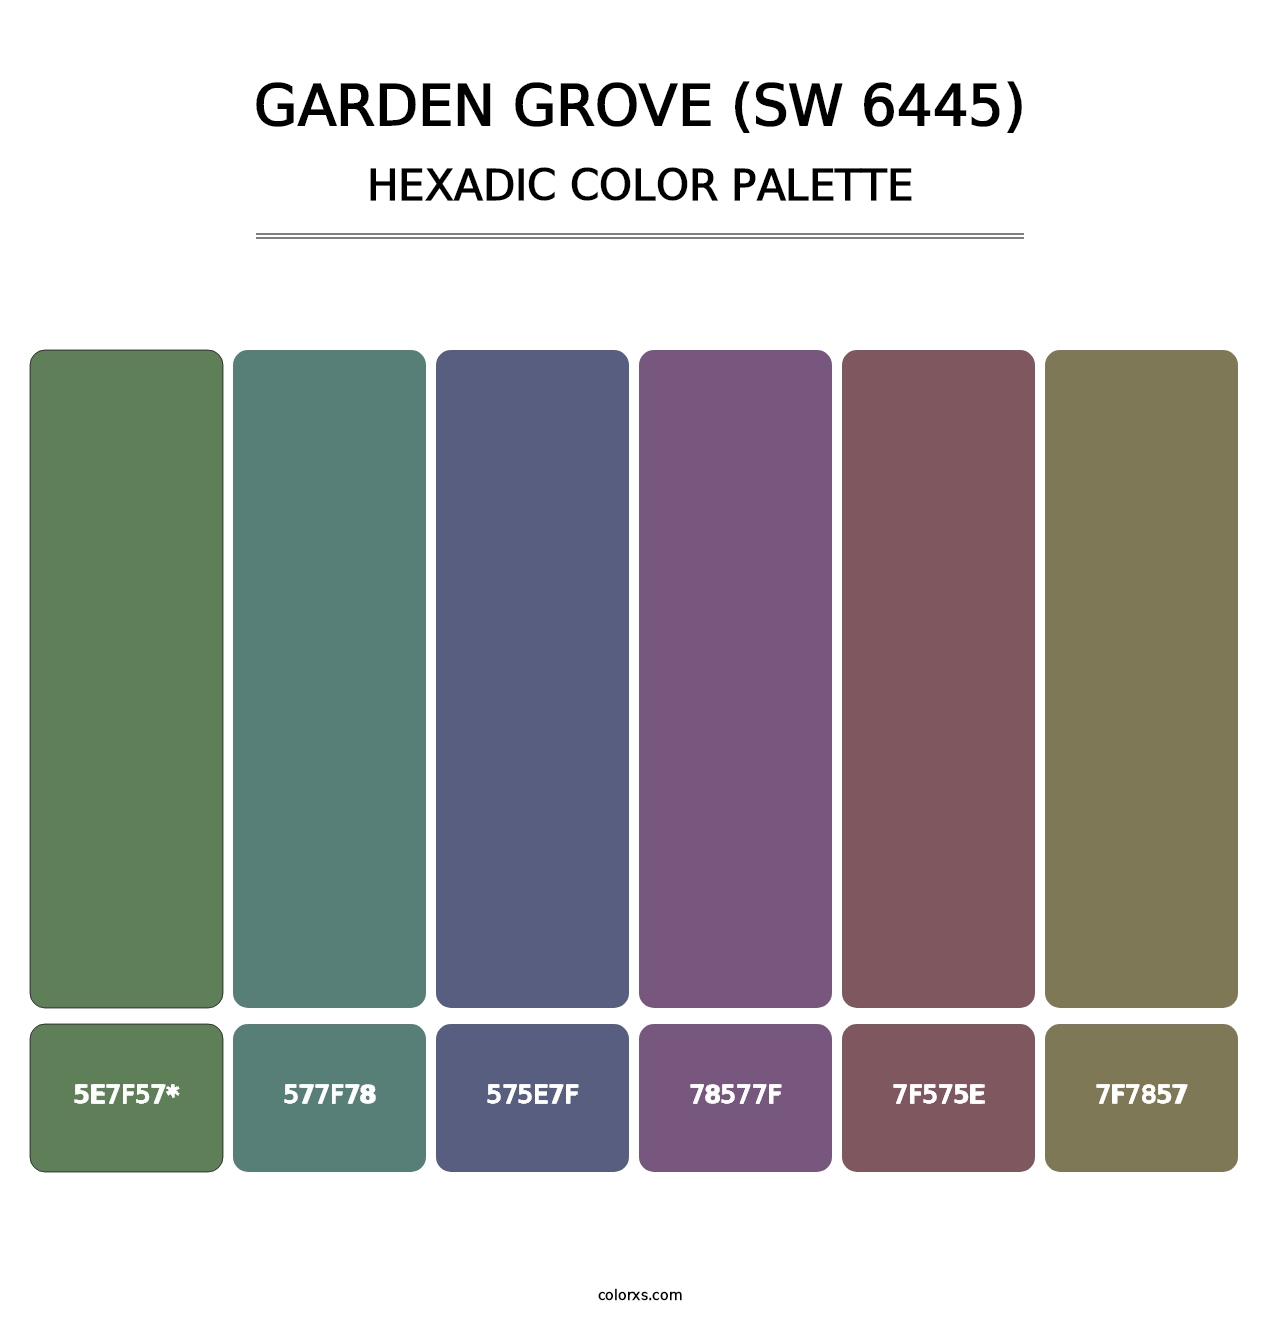 Garden Grove (SW 6445) - Hexadic Color Palette